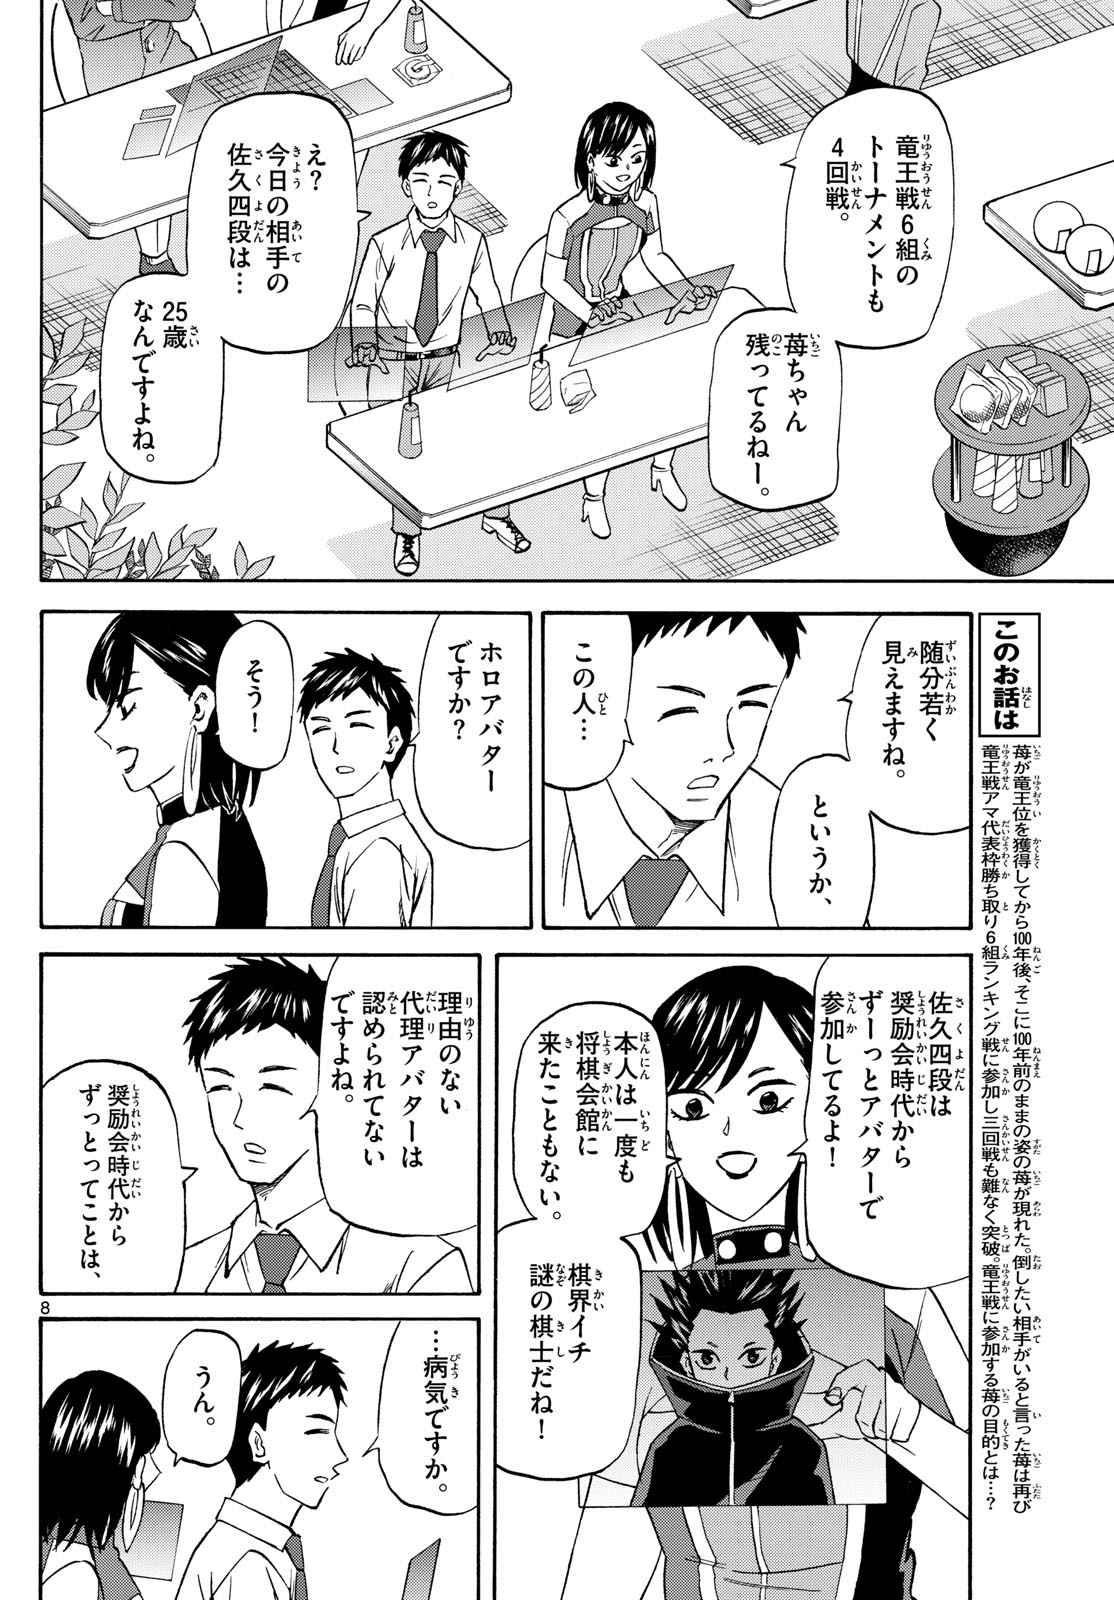 Tatsu to Ichigo - Chapter 191 - Page 8